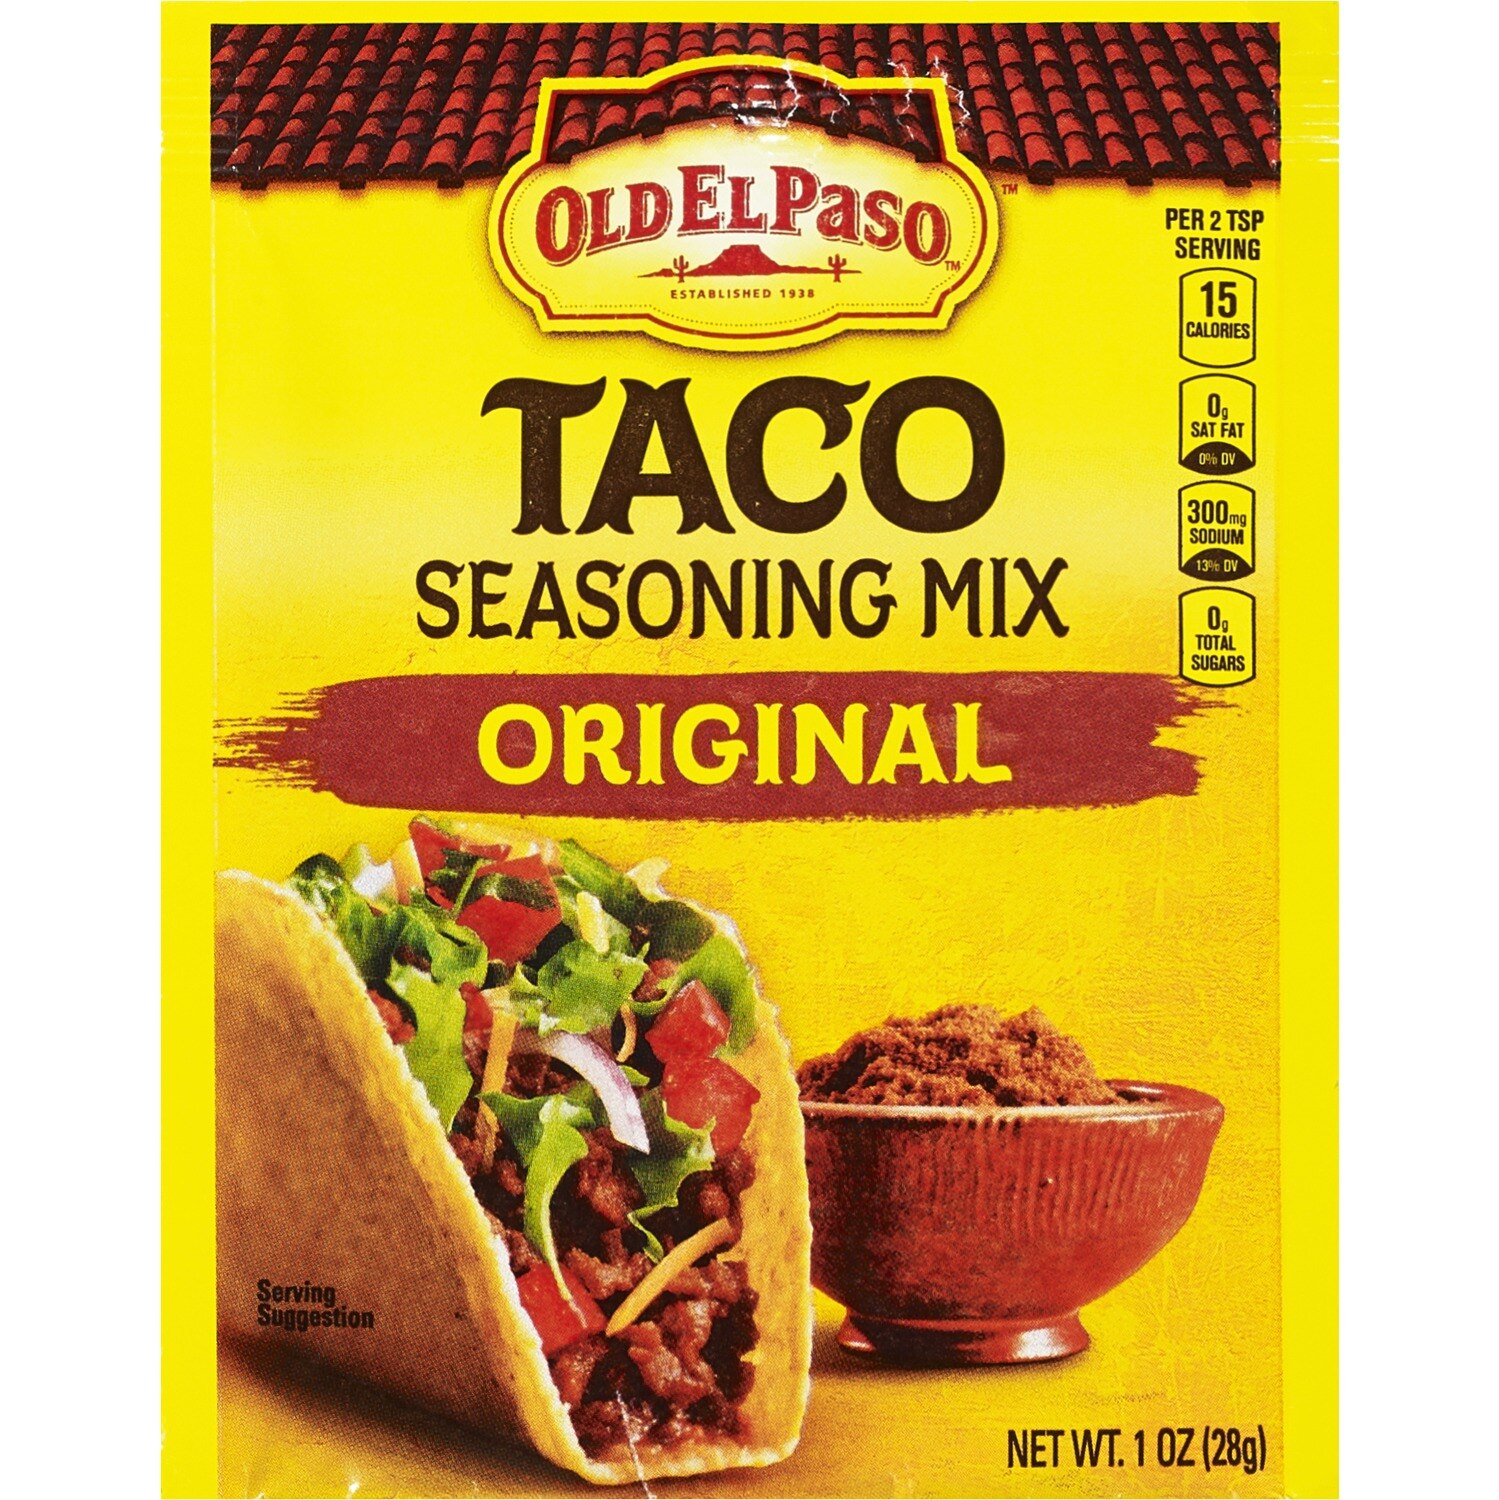 Old El Paso Taco Seasoning Mix Original, 1 OZ